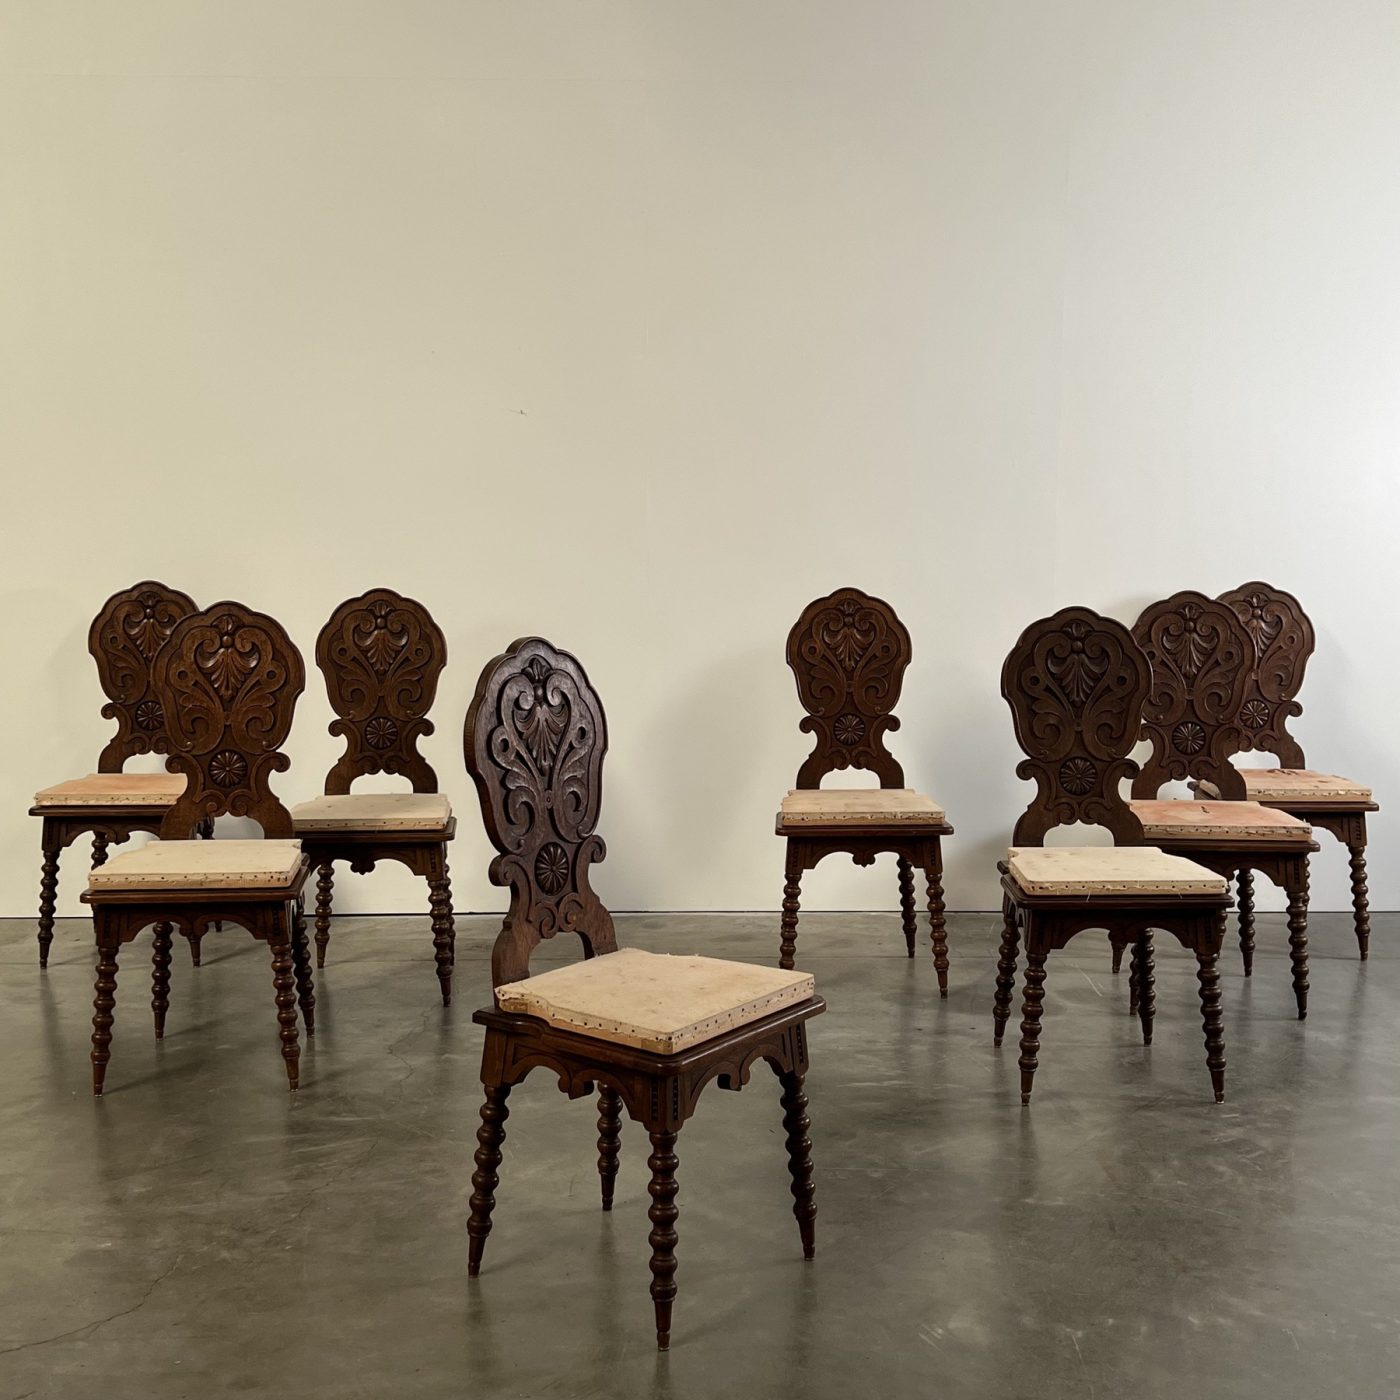 objet-vagabond-antique-chairs0003